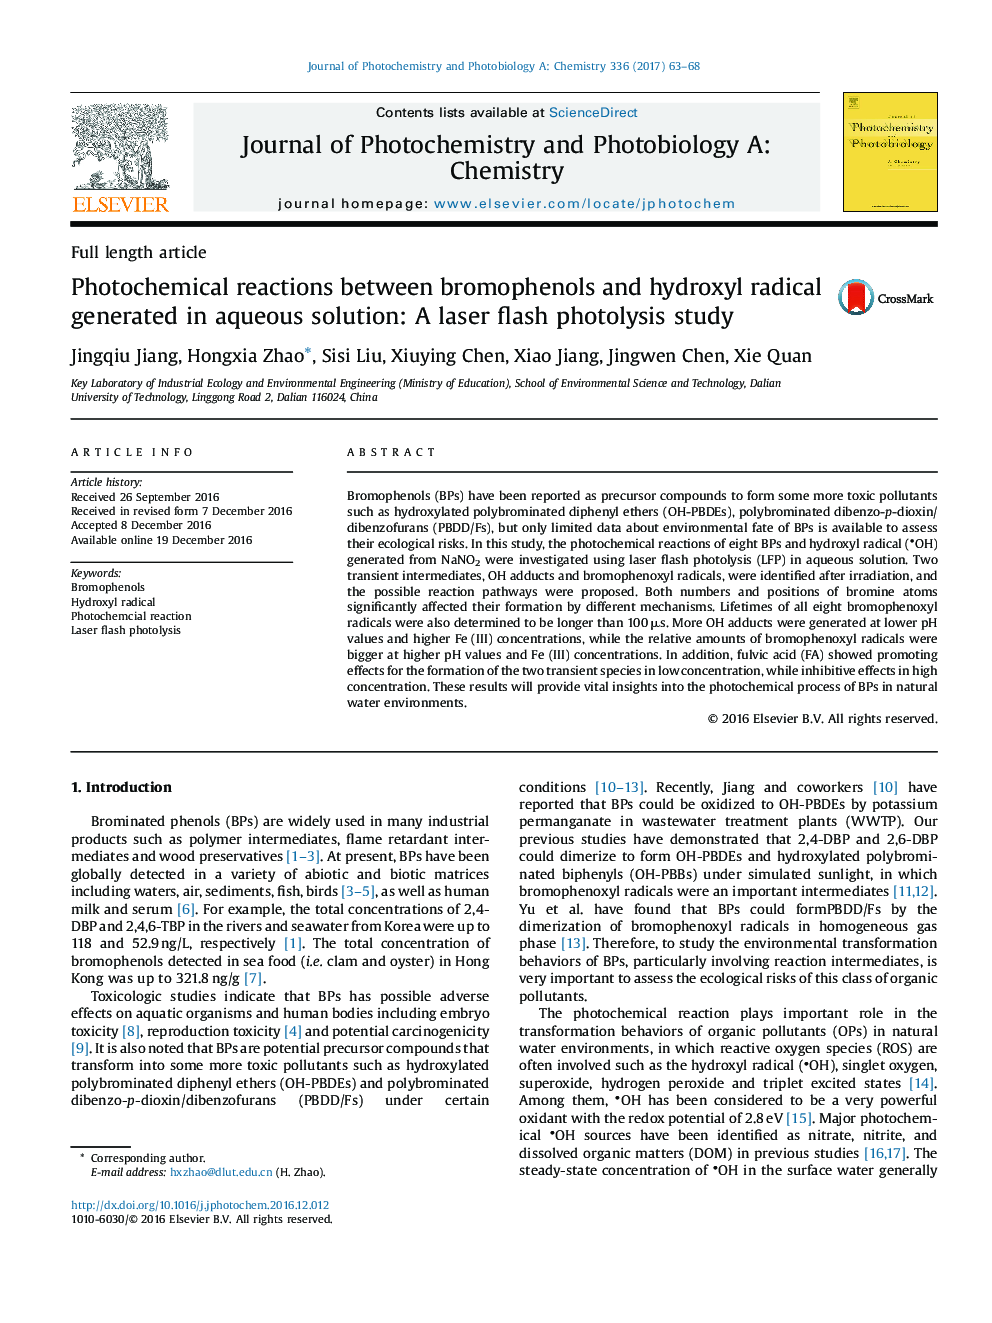 واکنش های عکس شیمیایی بین بروموفنول ها و رادیکال هیدروکسیل تولید شده در محلول های آبی: یک مطالعه فوتولیز لیزر فلش 